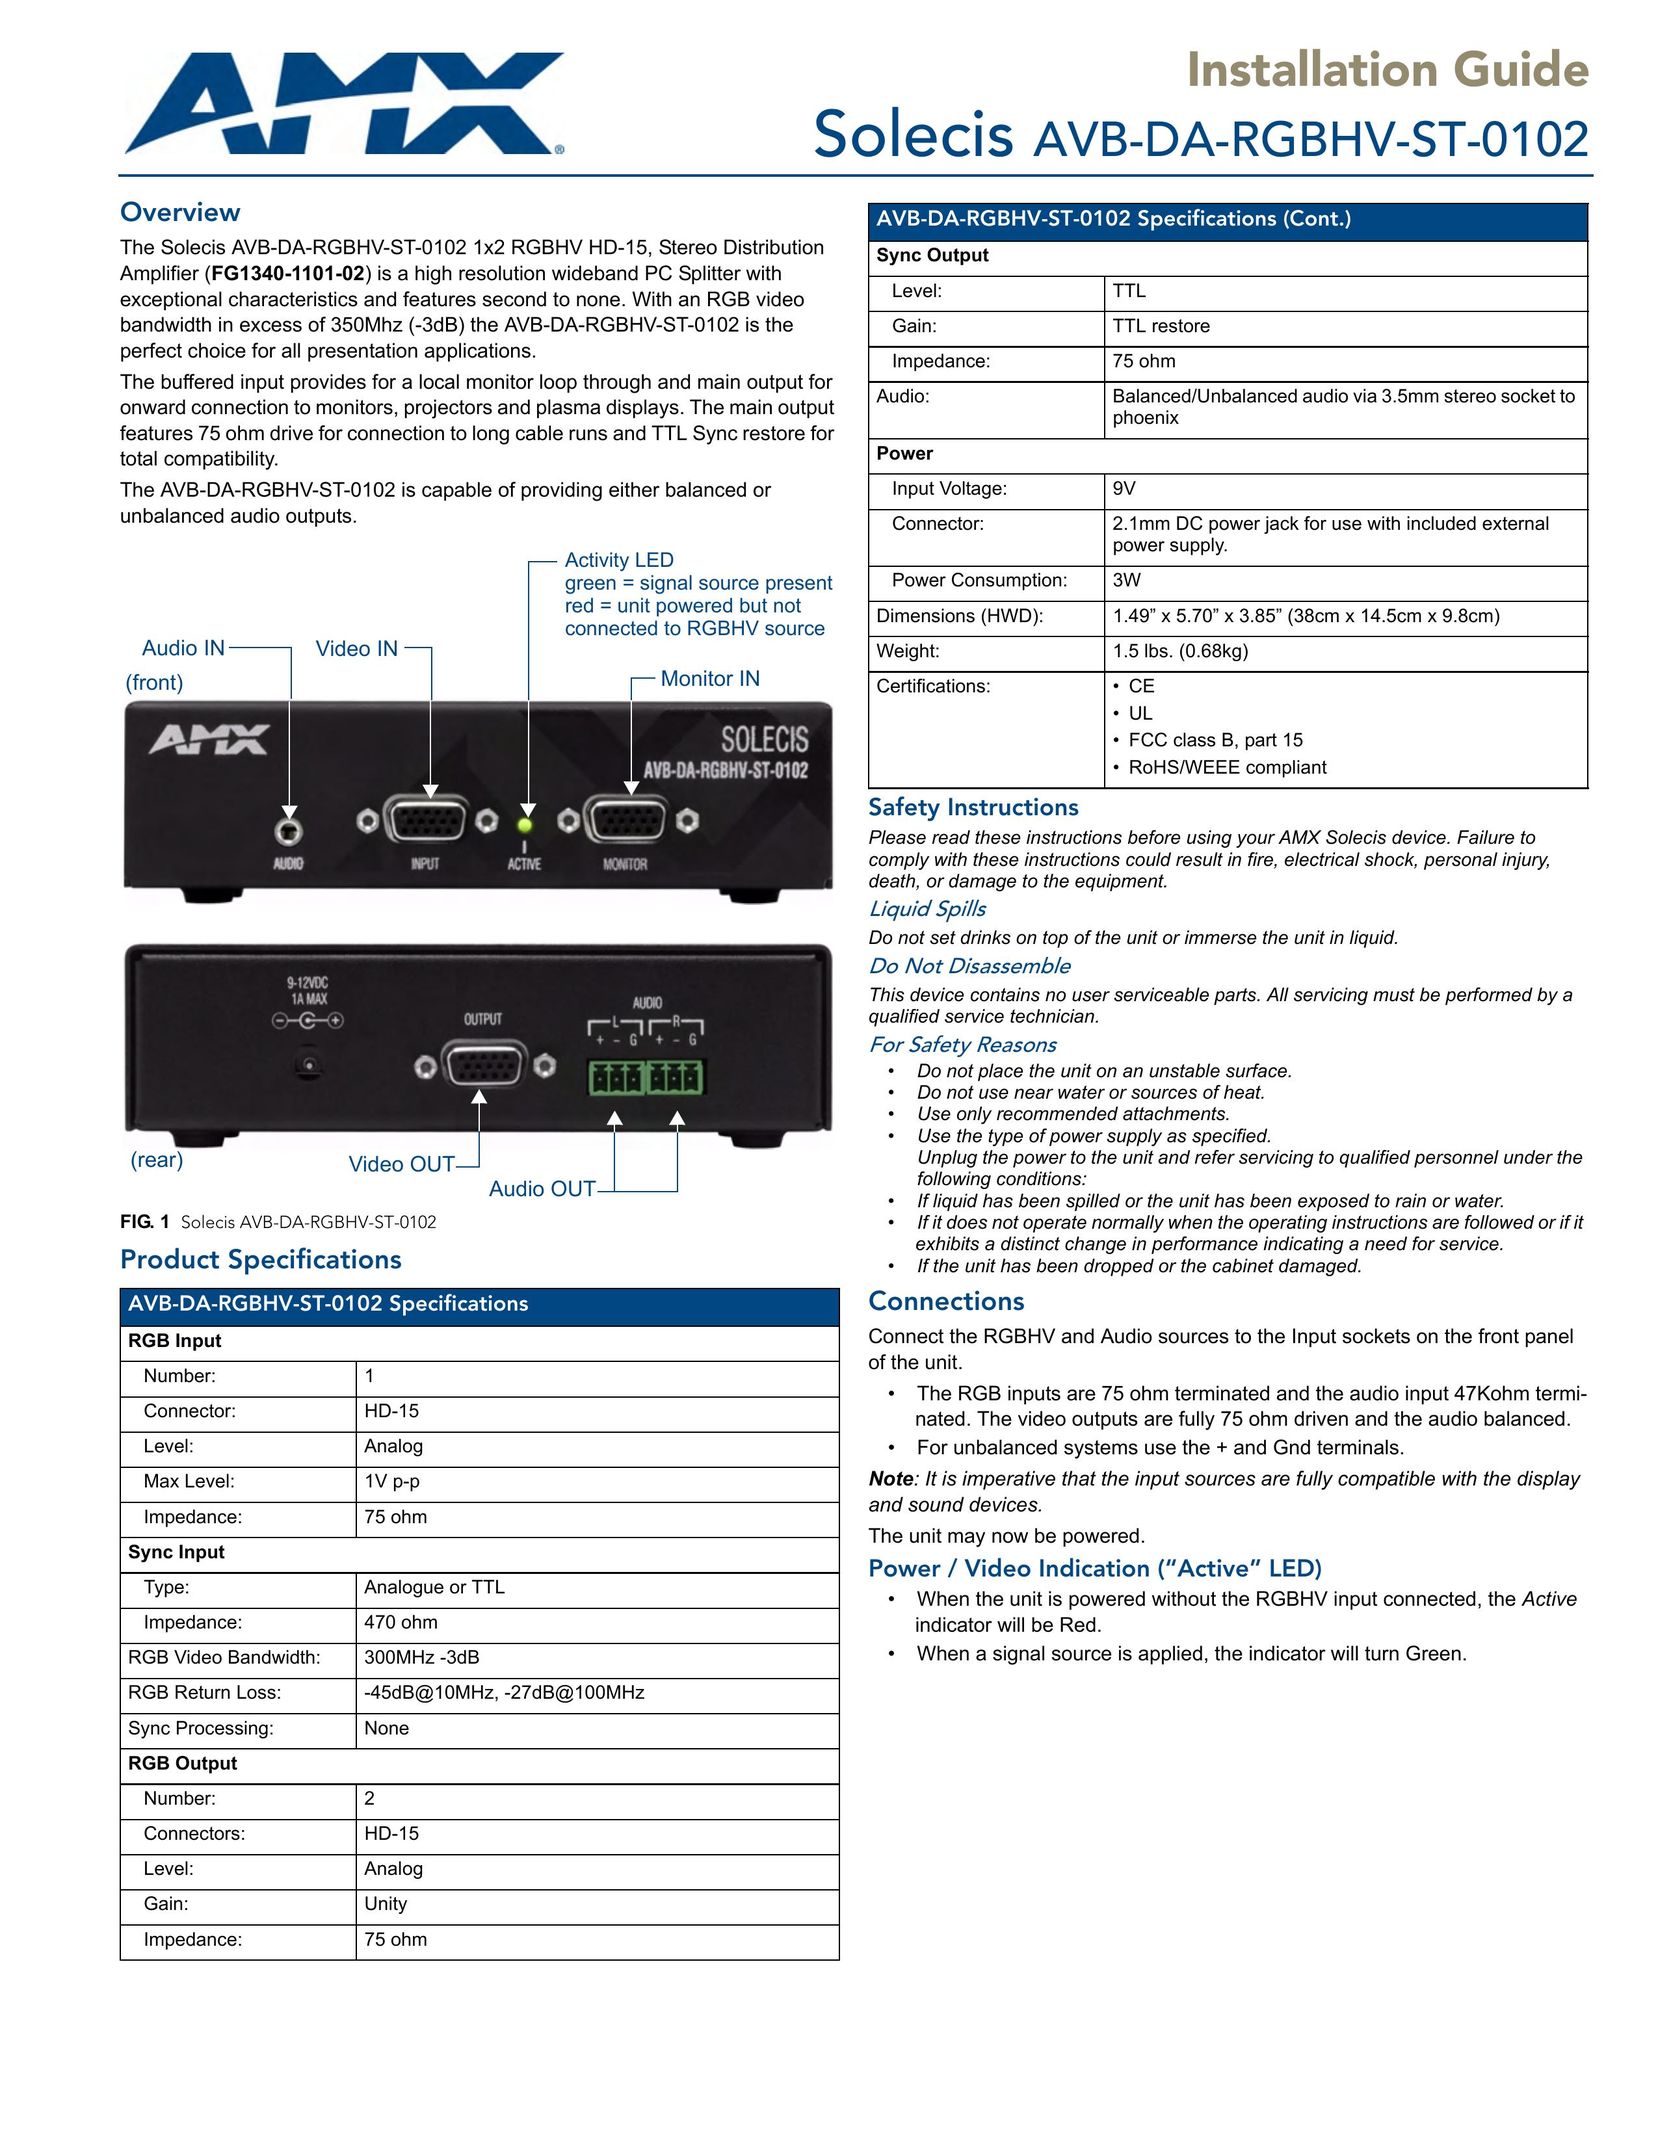 AMX AVB-DA-RGBHV-ST-0102 Stereo Amplifier User Manual